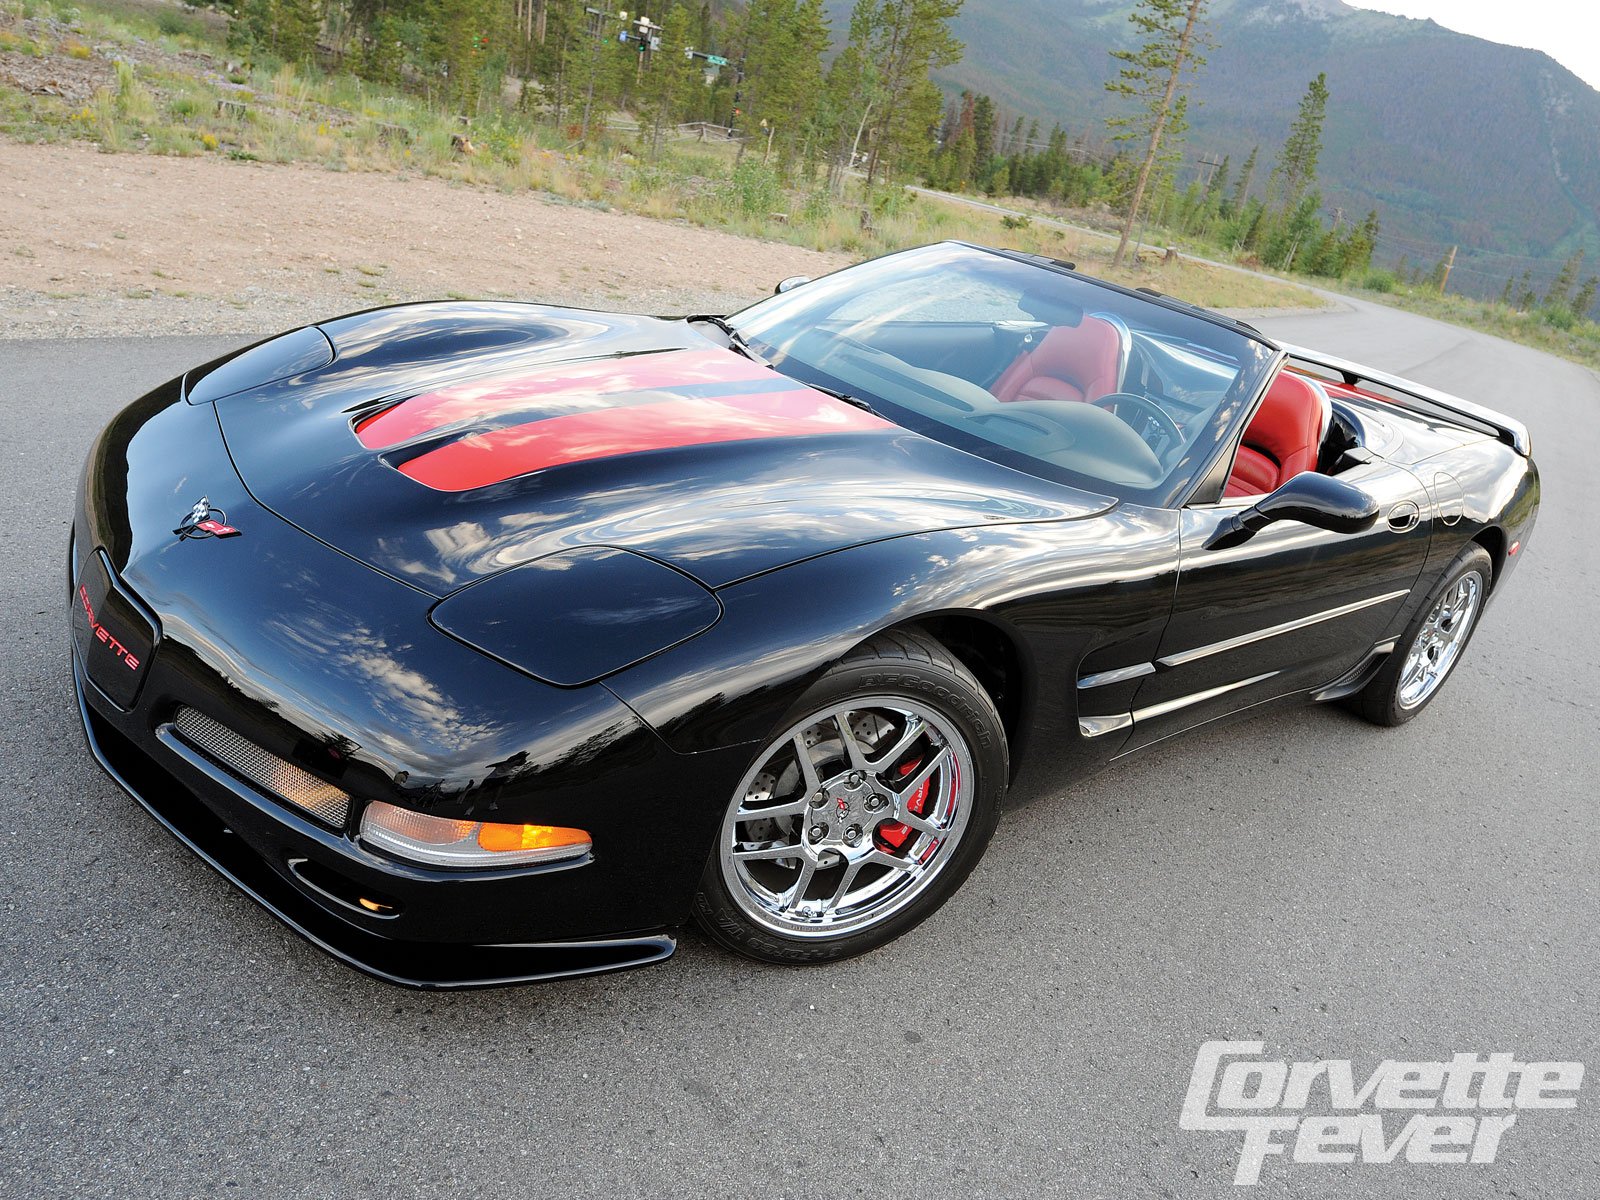 1997, 04, C, 5, Chevrolet, Corvette, Coupe, Convertible, Muscle, Supercar Wallpaper